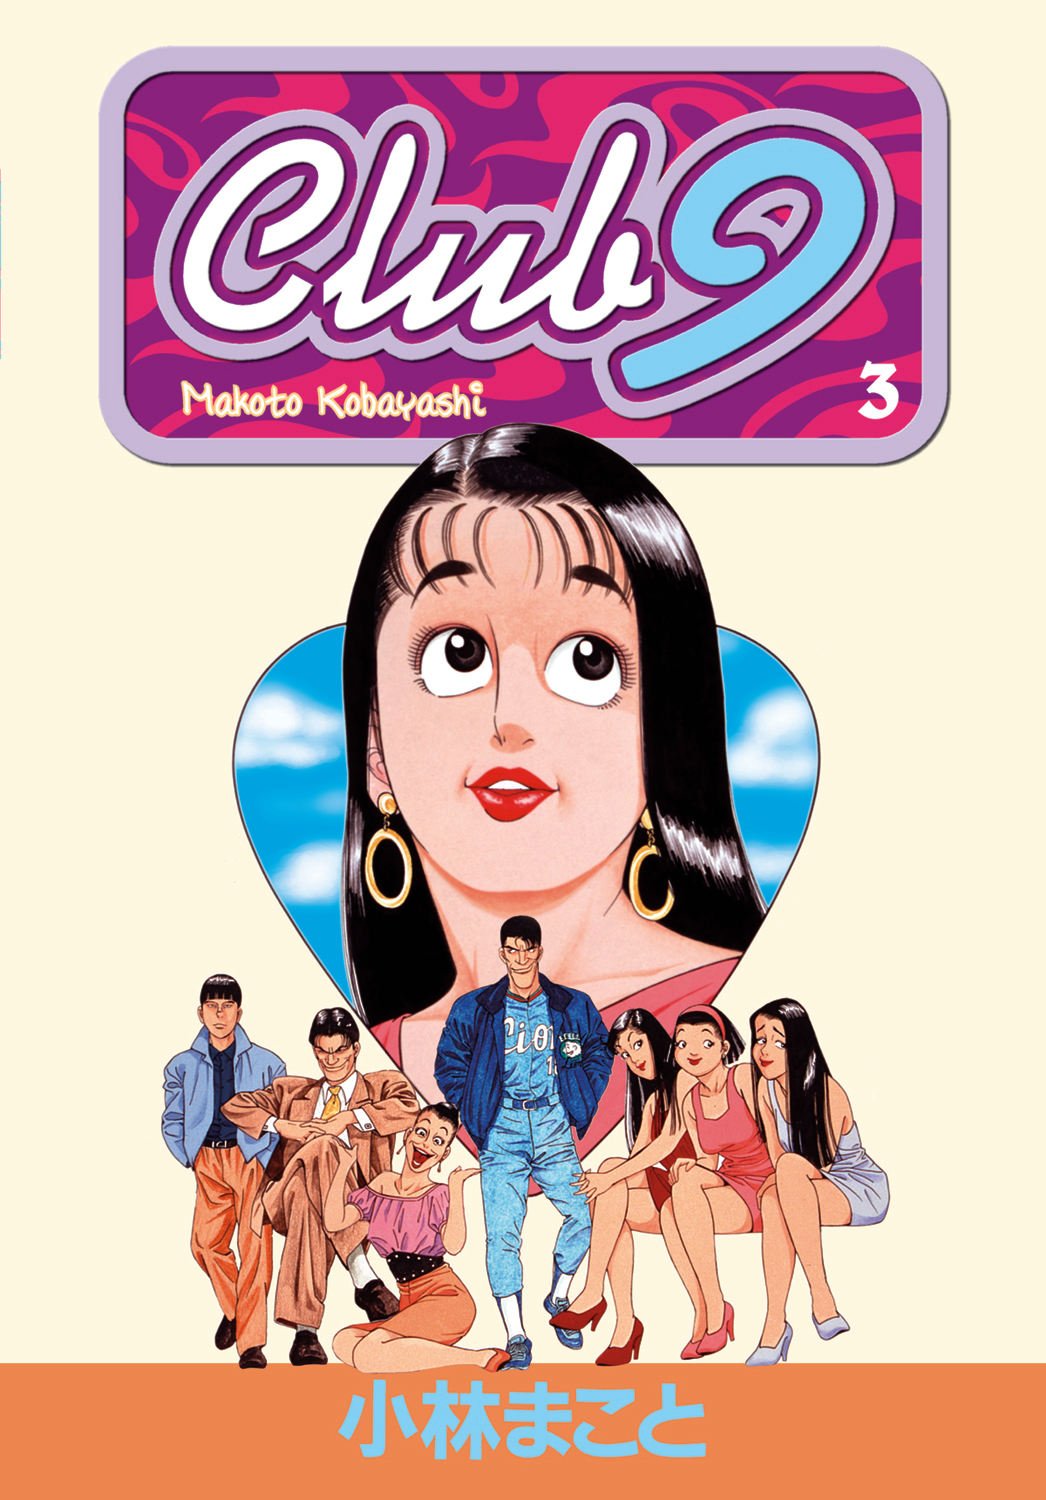 Club 9 vol 3 by Makoto Kobayashi